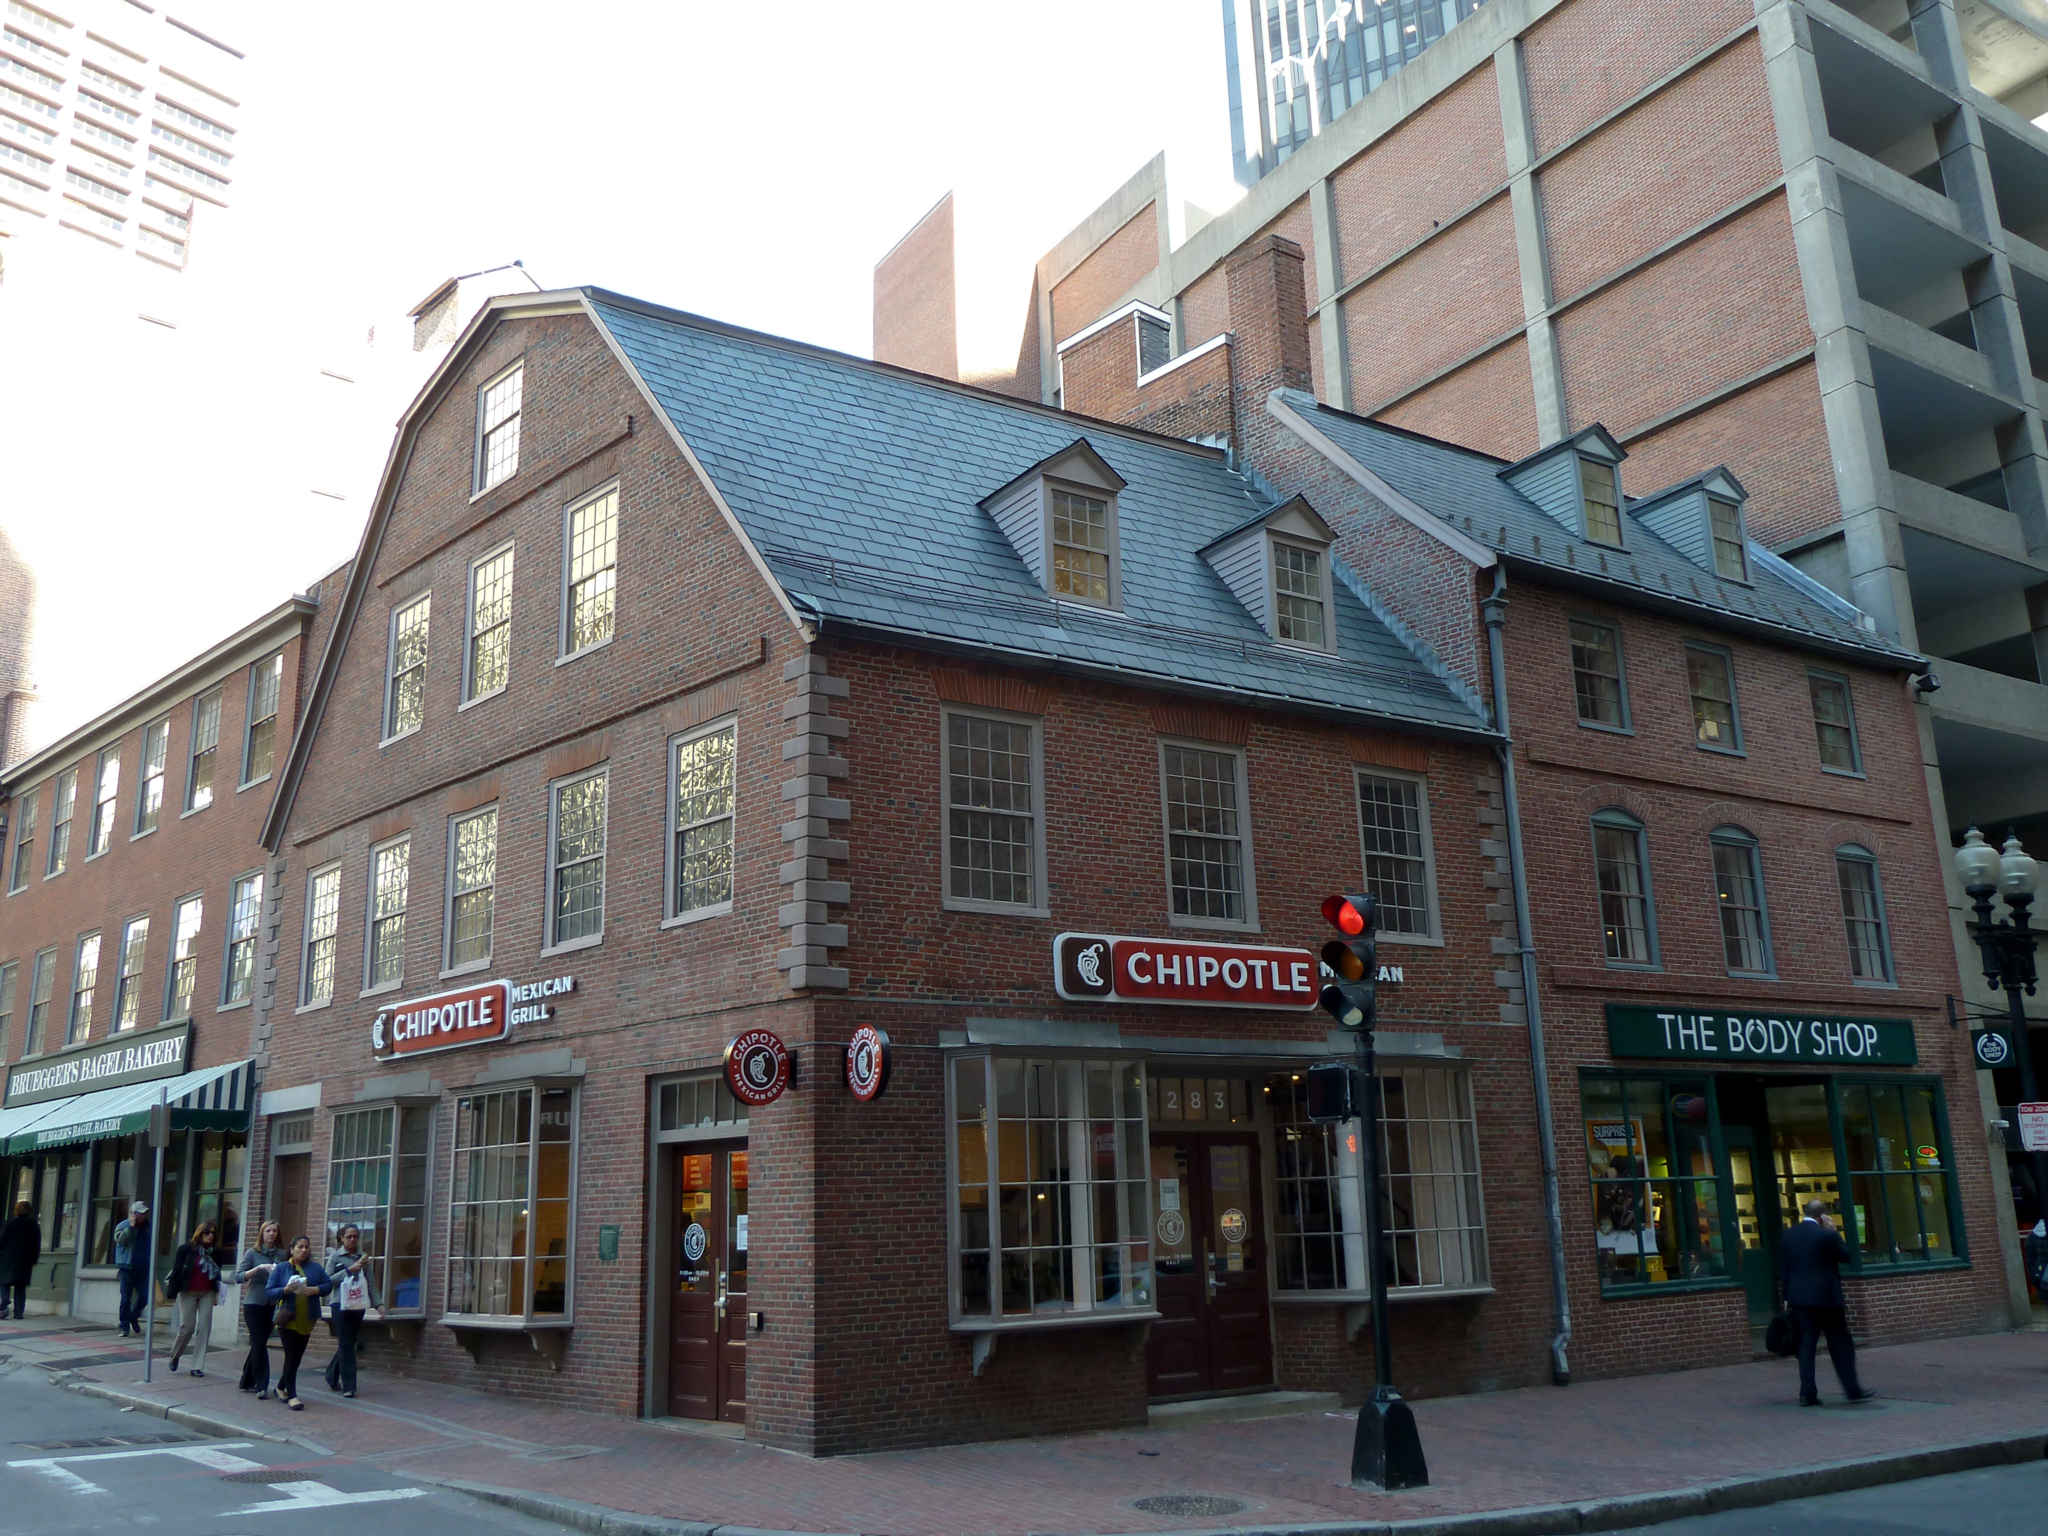 old-corner-bookstore-boston